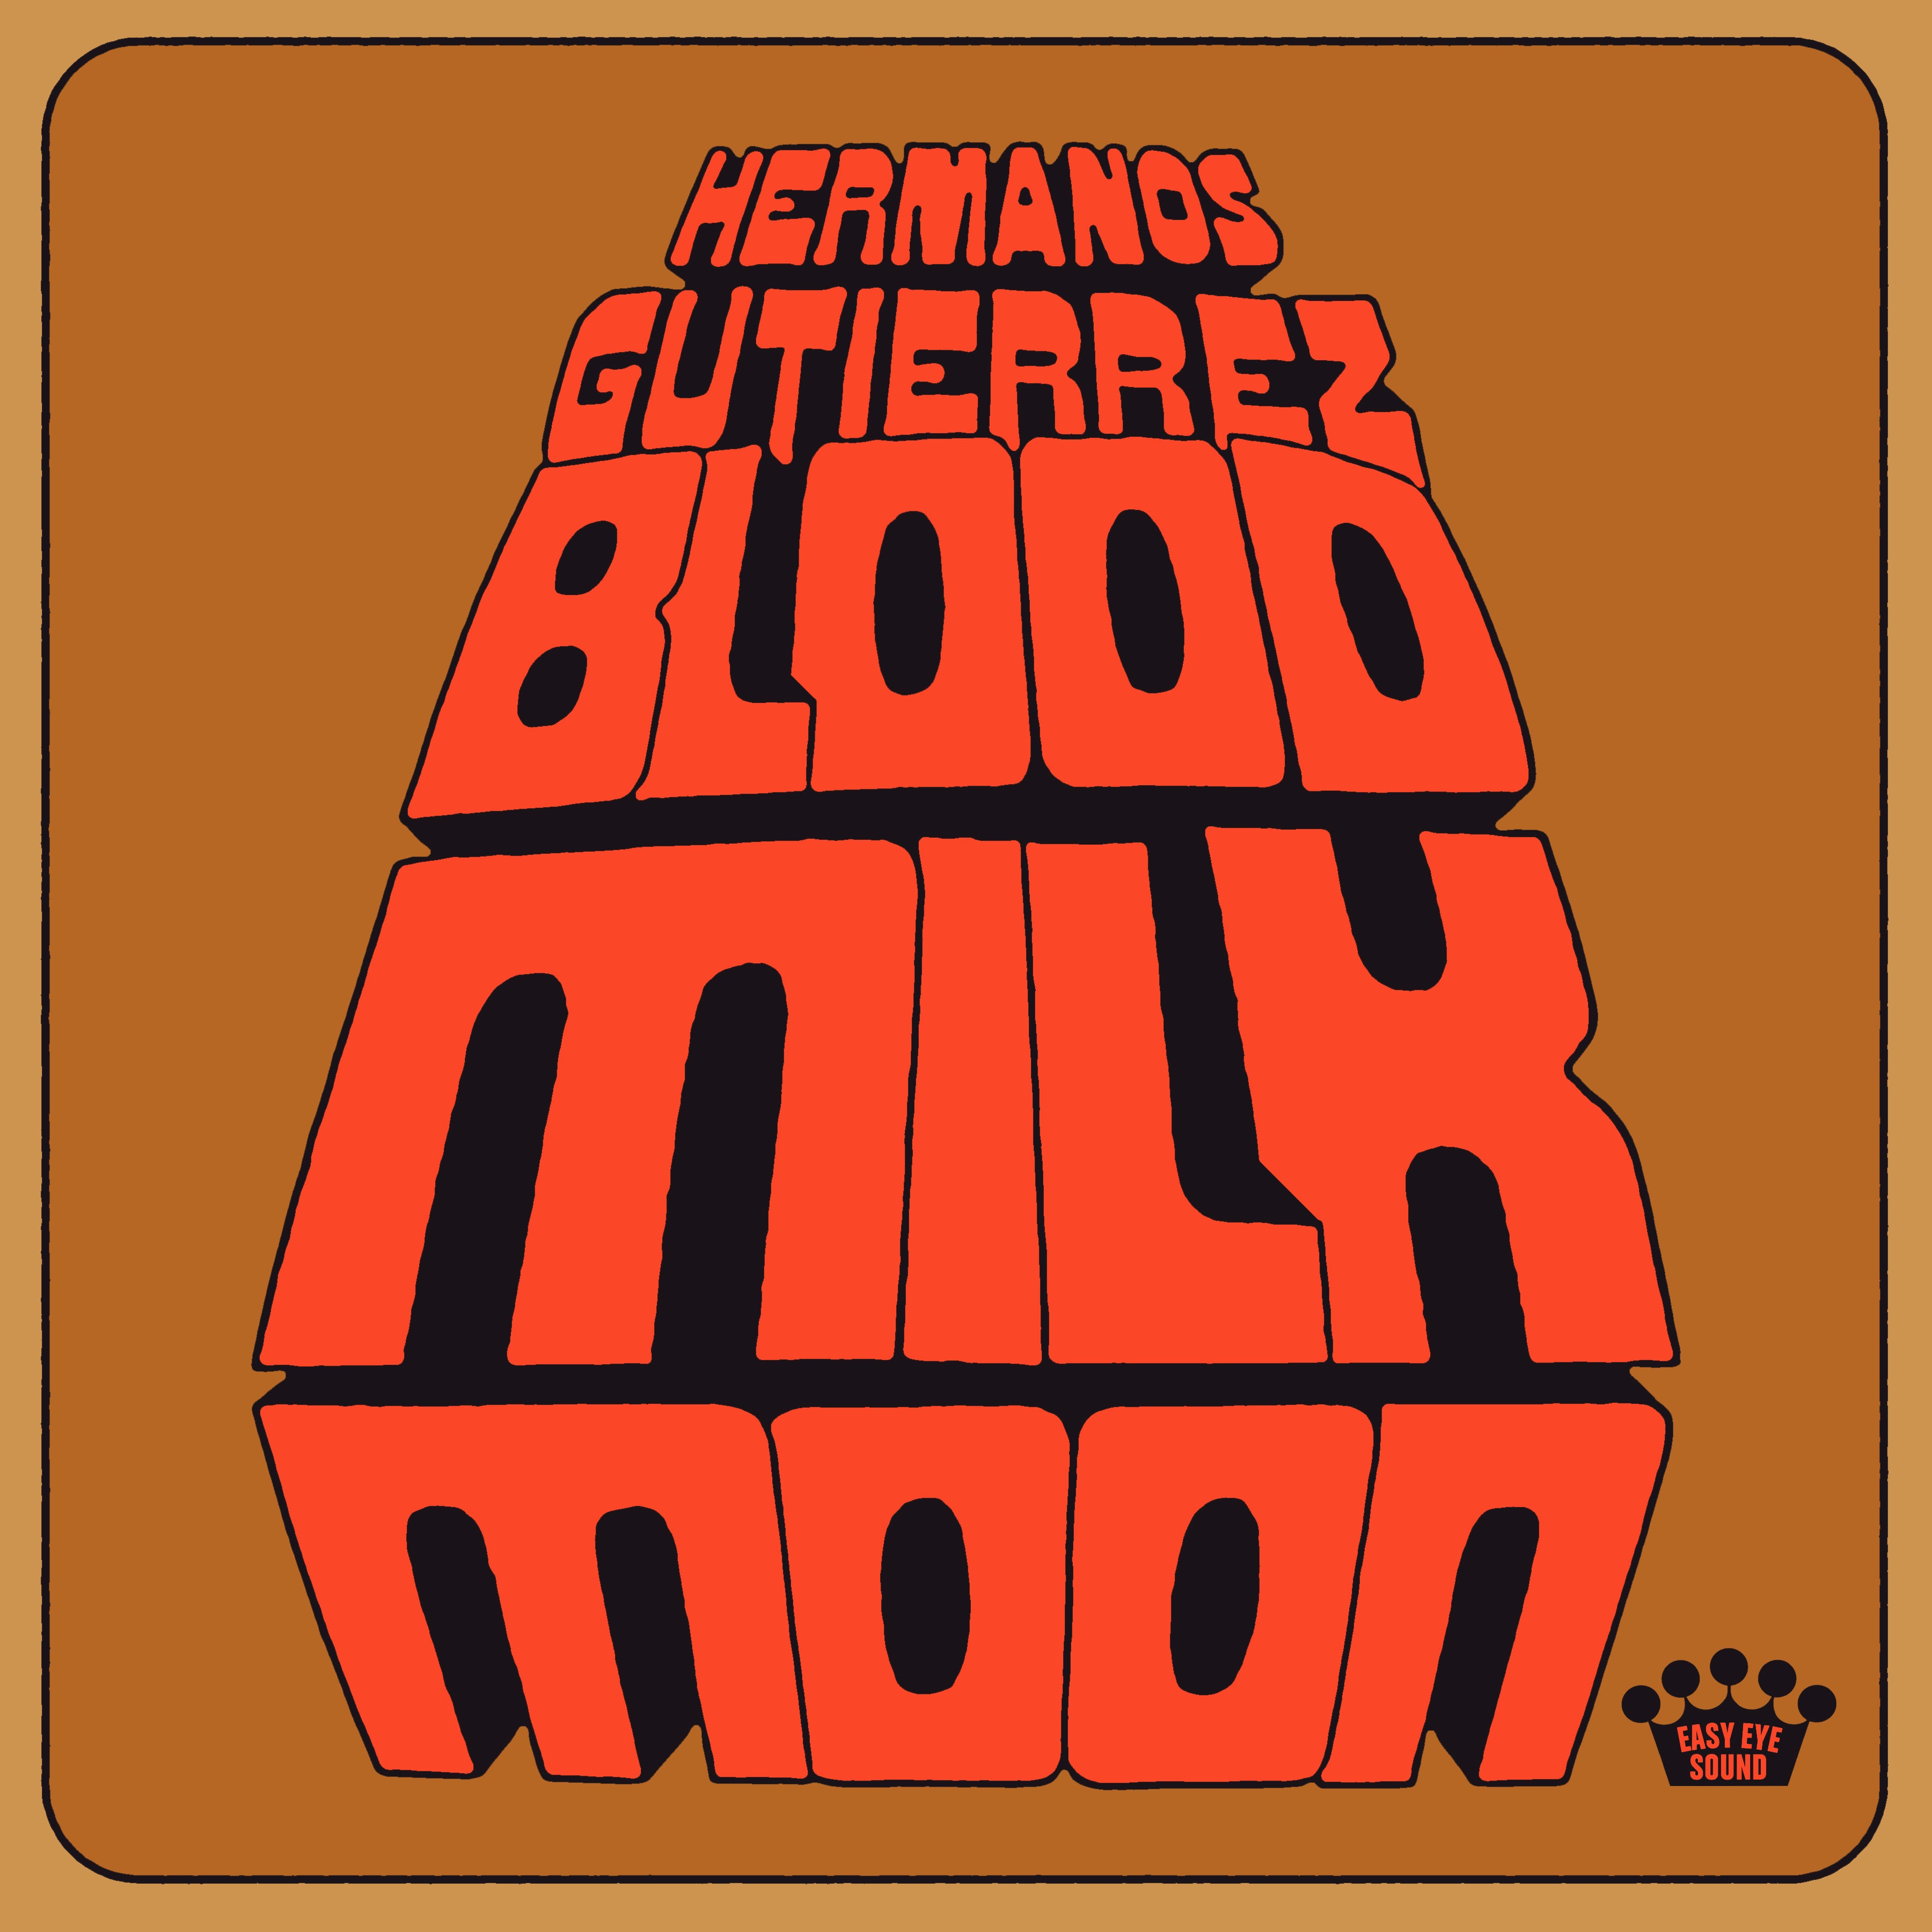 Listen to "Blood Milk Moon" by Hermanos Gutiérrez now!